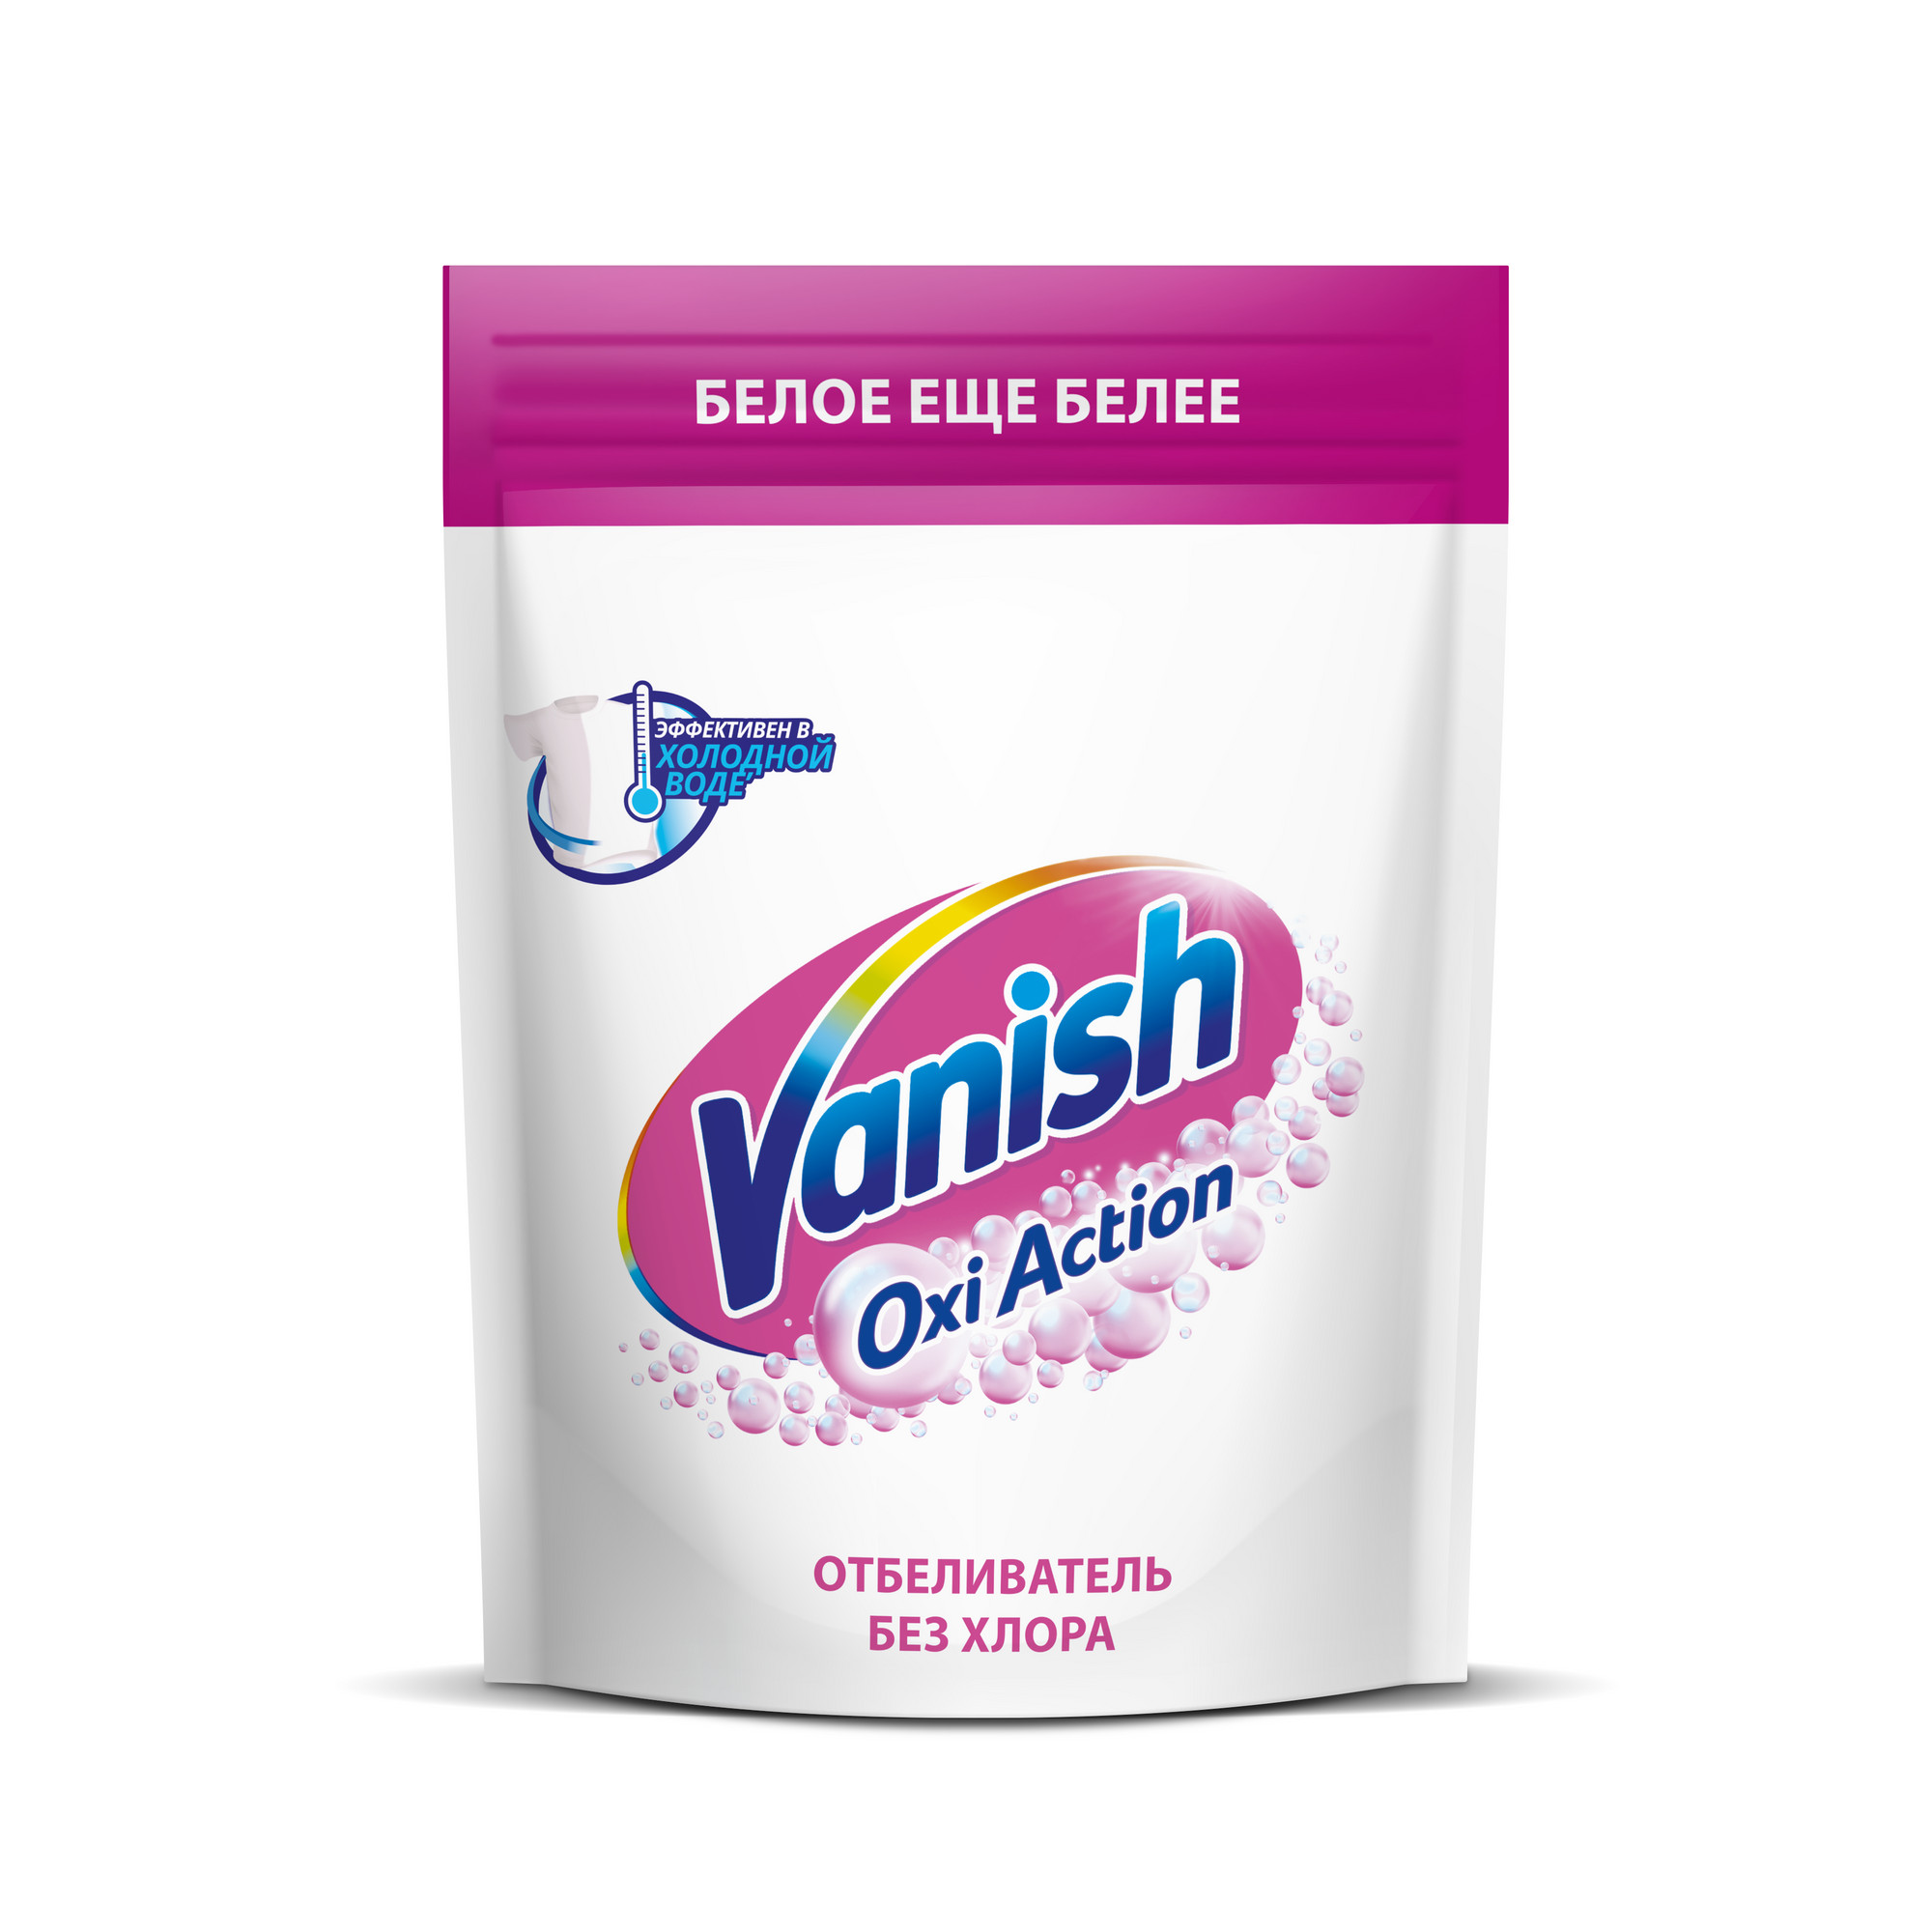 Пятновыводитель Vanish Oxi Action Кристальная белизна для тканей порошкообразный 500 г пятновыводитель отбеливатель vanish oxi action кристальная белизна жидкий 2 л 1шт